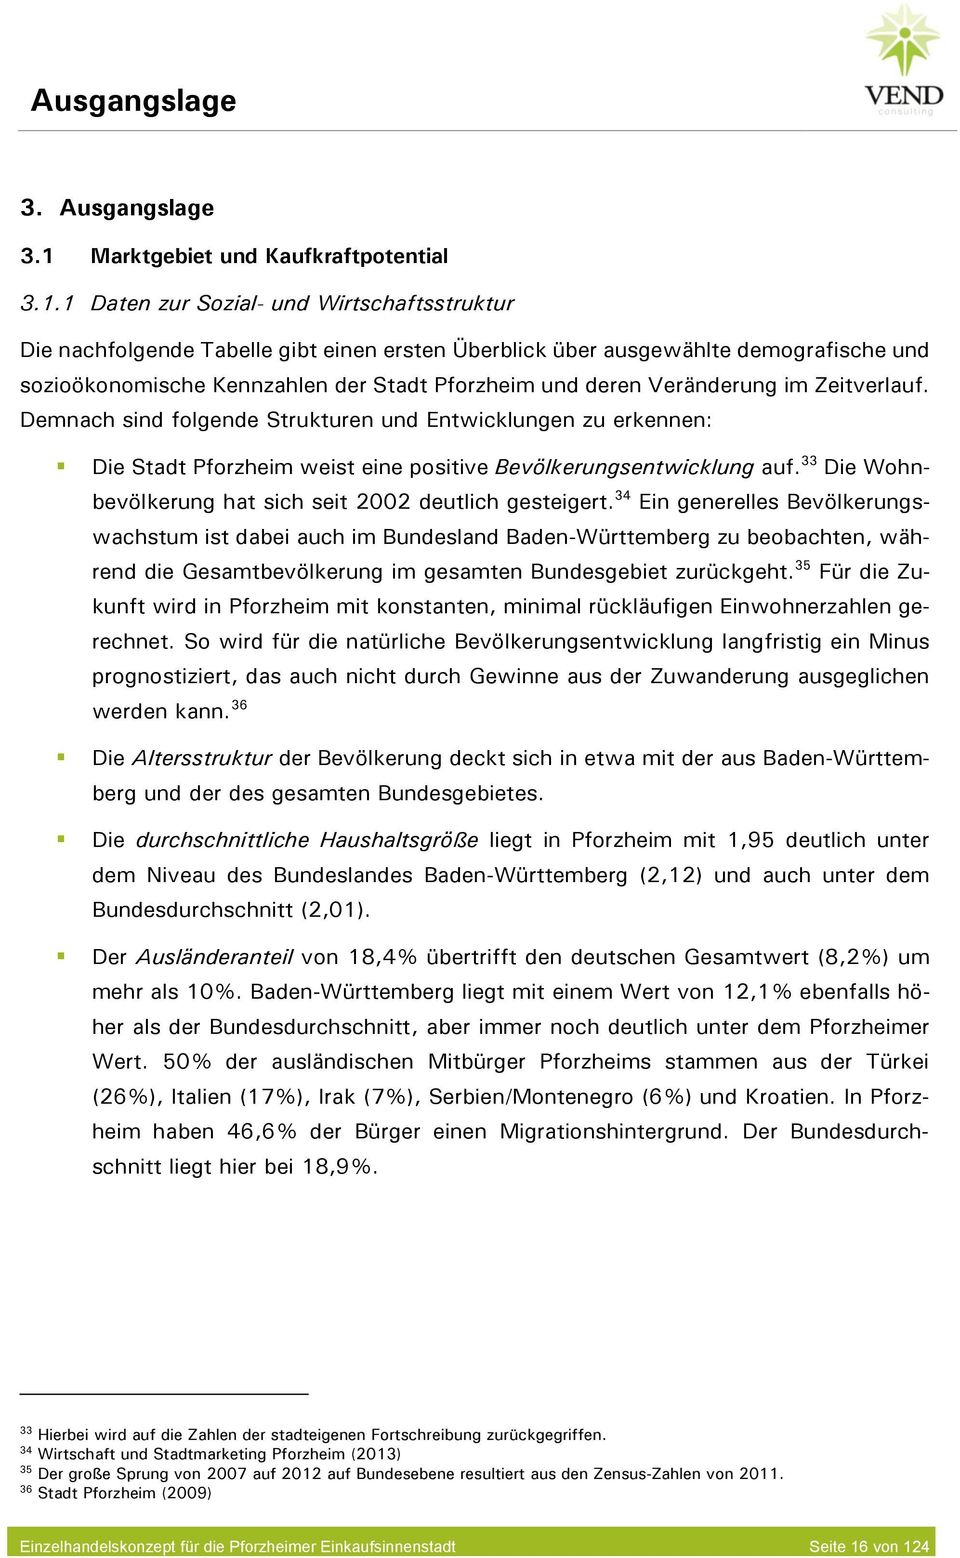 1 Daten zur Sozial- und Wirtschaftsstruktur Die nachfolgende Tabelle gibt einen ersten Überblick über ausgewählte demografische und sozioökonomische Kennzahlen der Stadt Pforzheim und deren